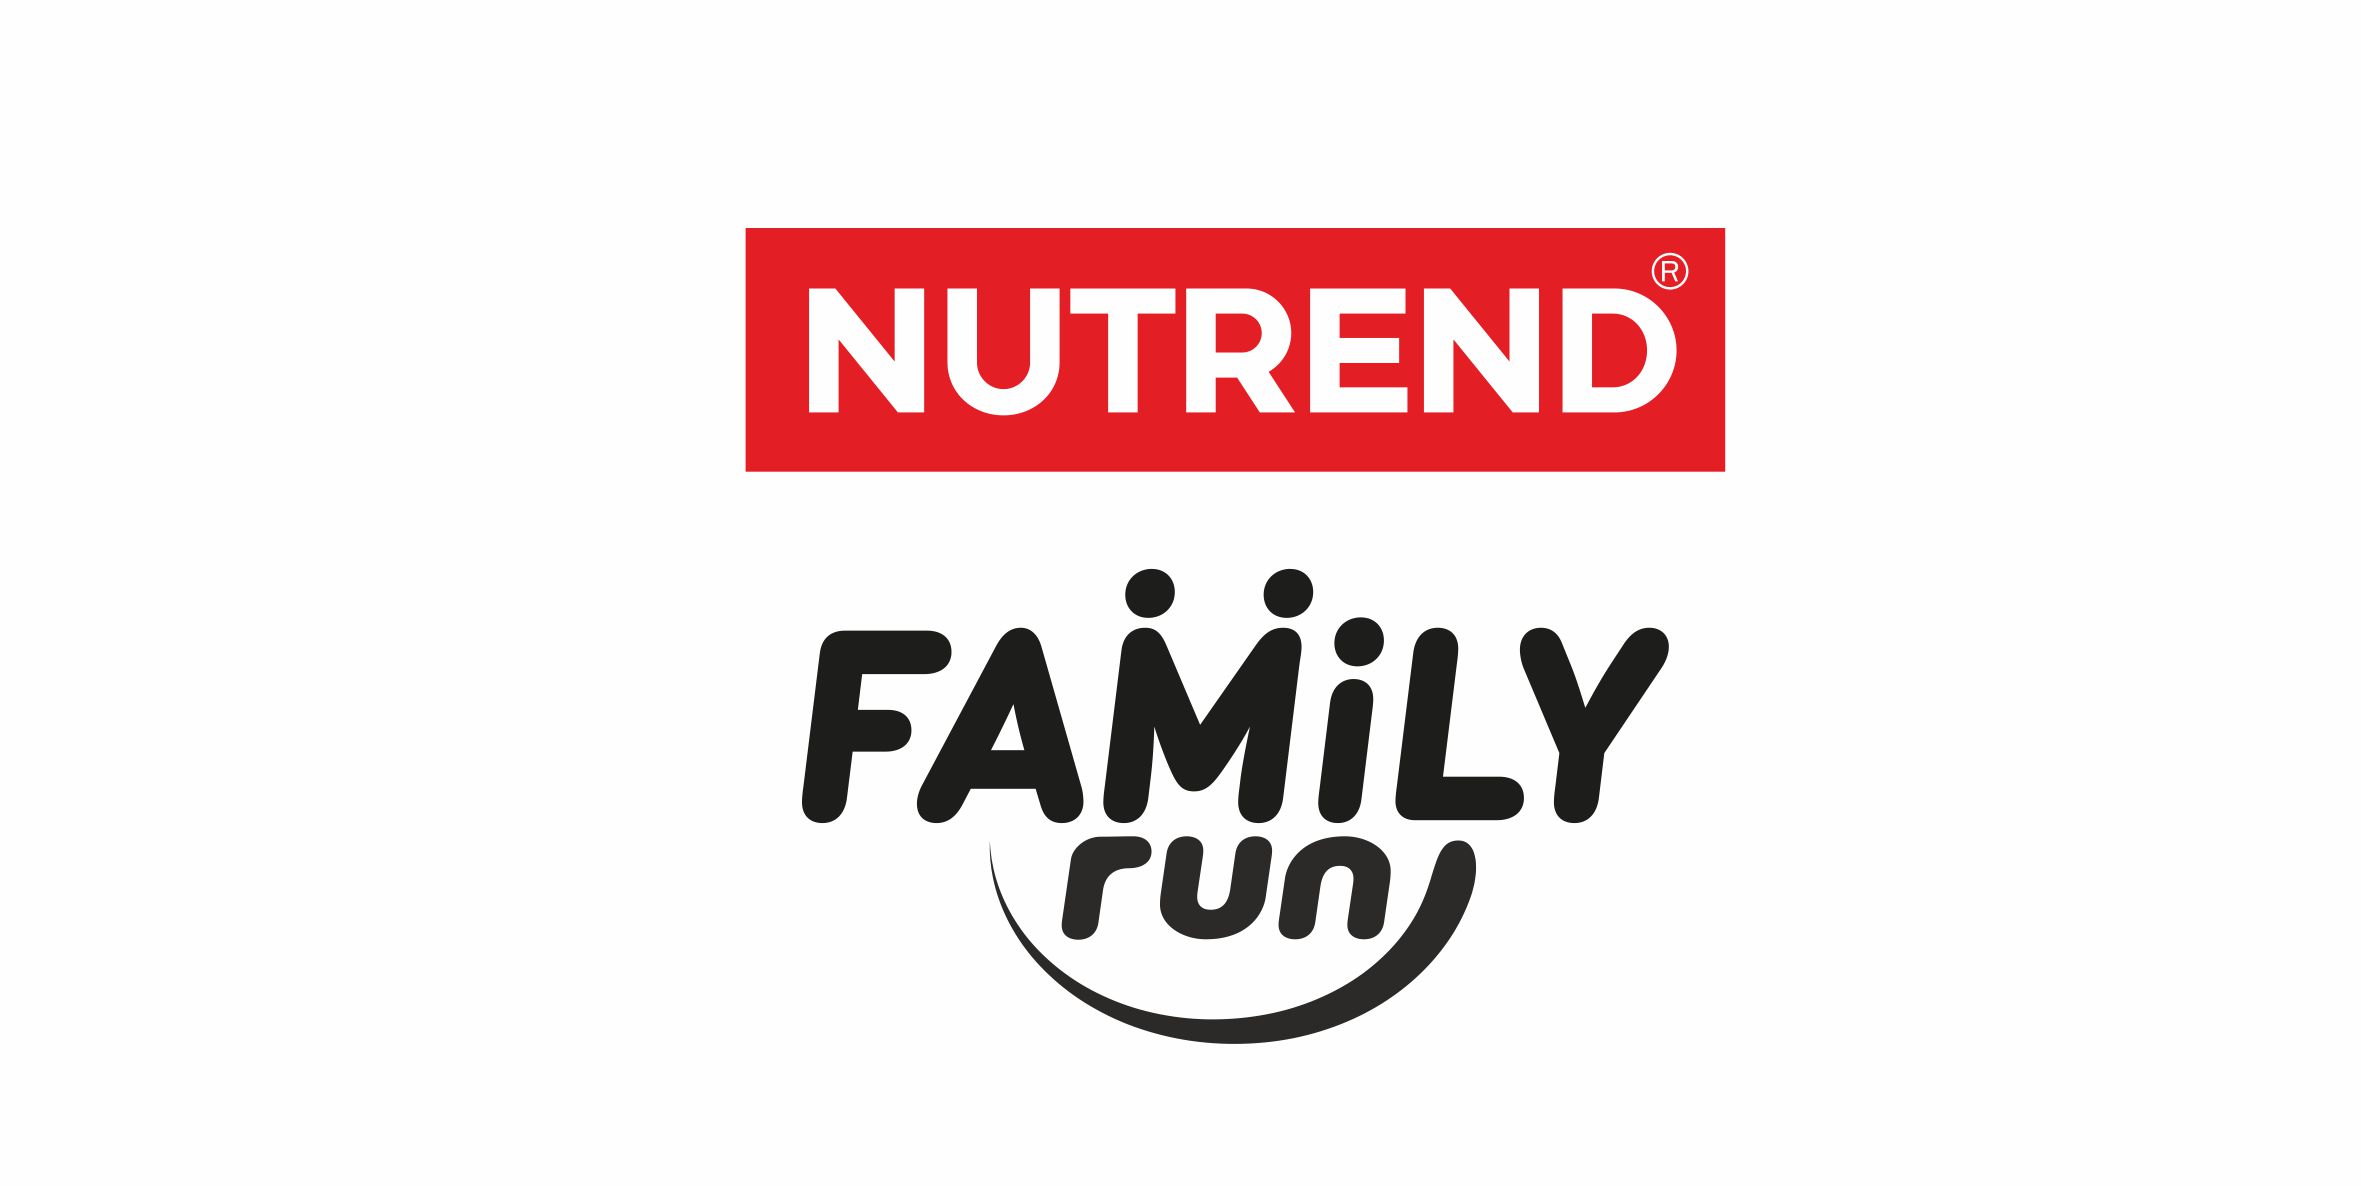 NUTREND FAMILY RUN VR